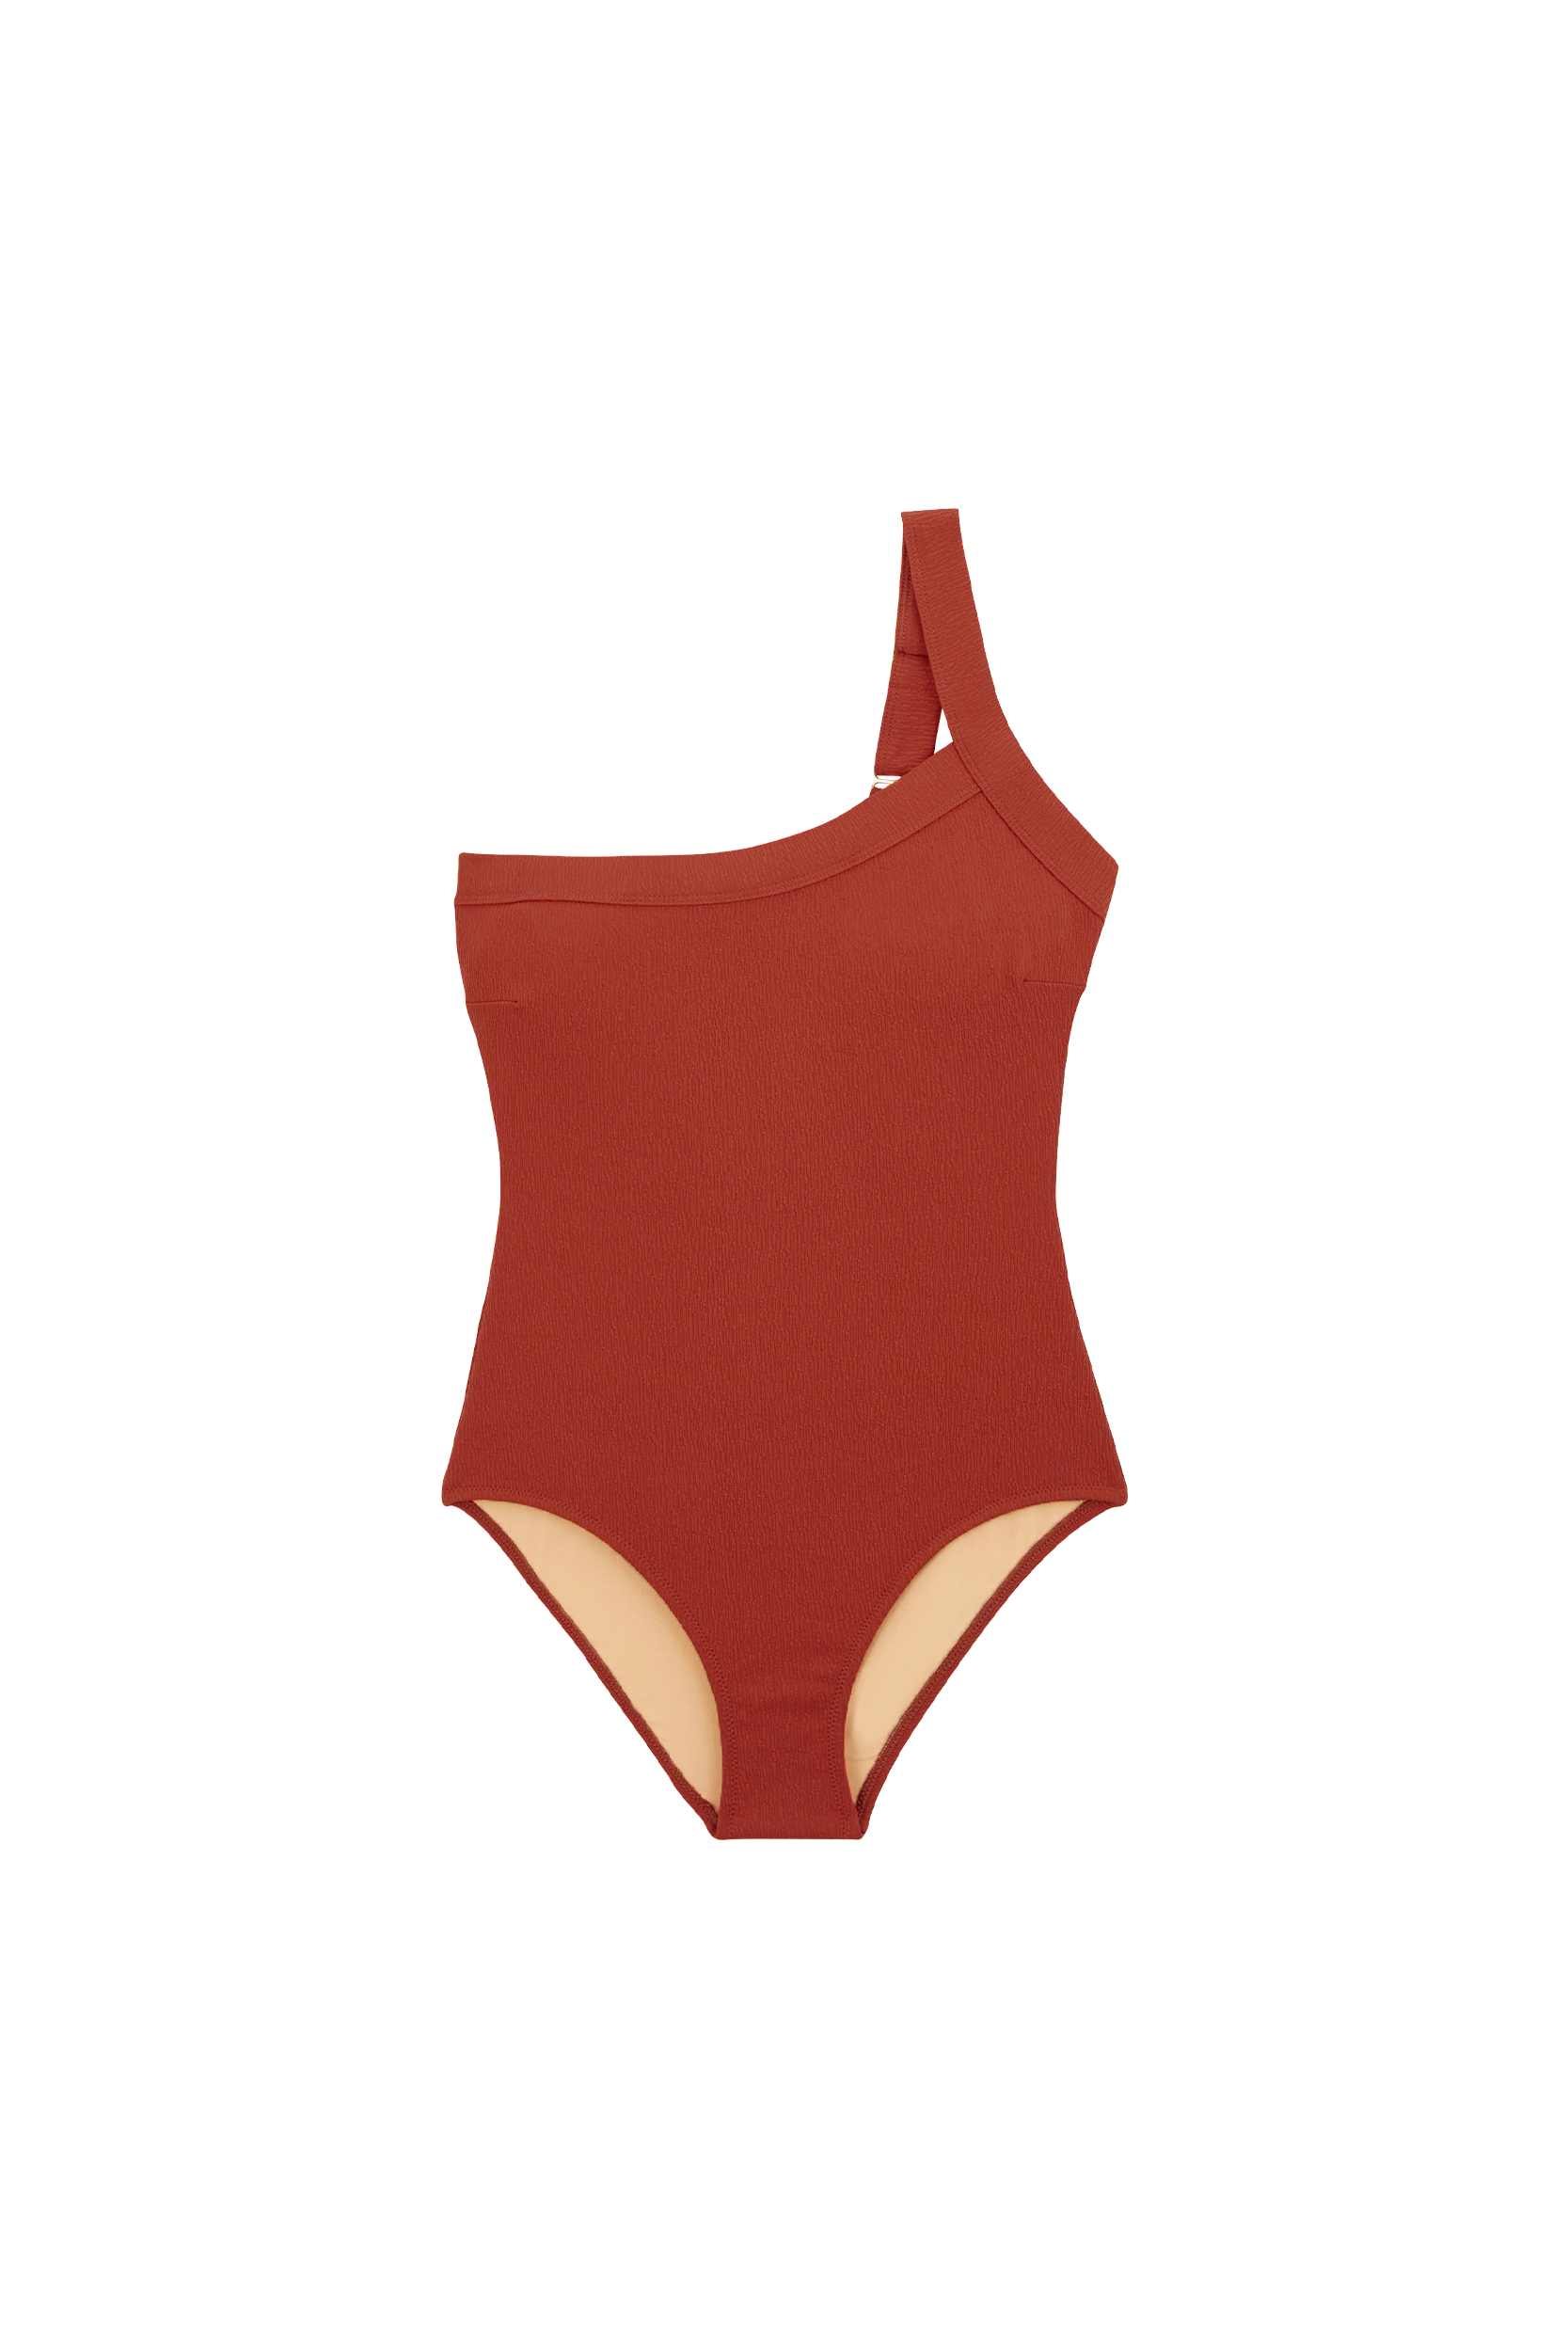 Iris terracotta swimsuit